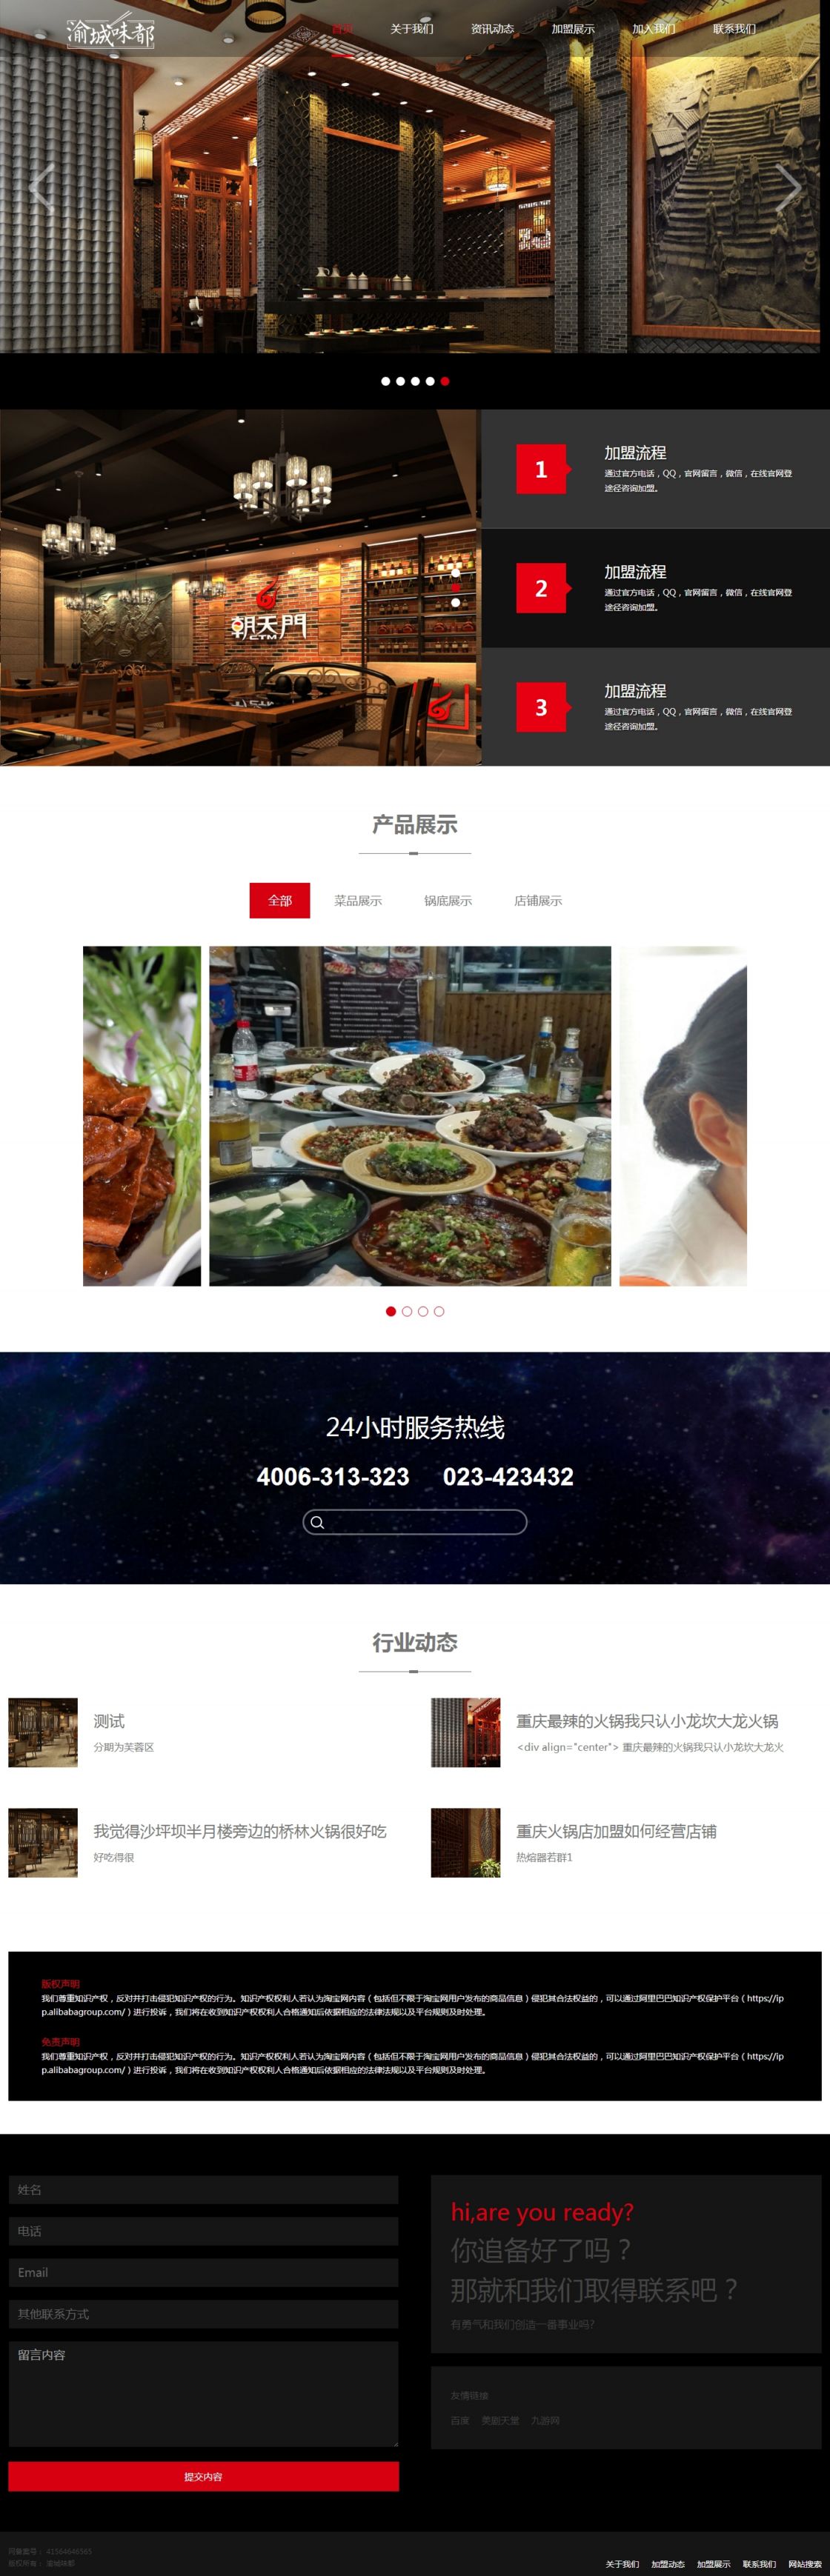 火锅行业展示模板网站